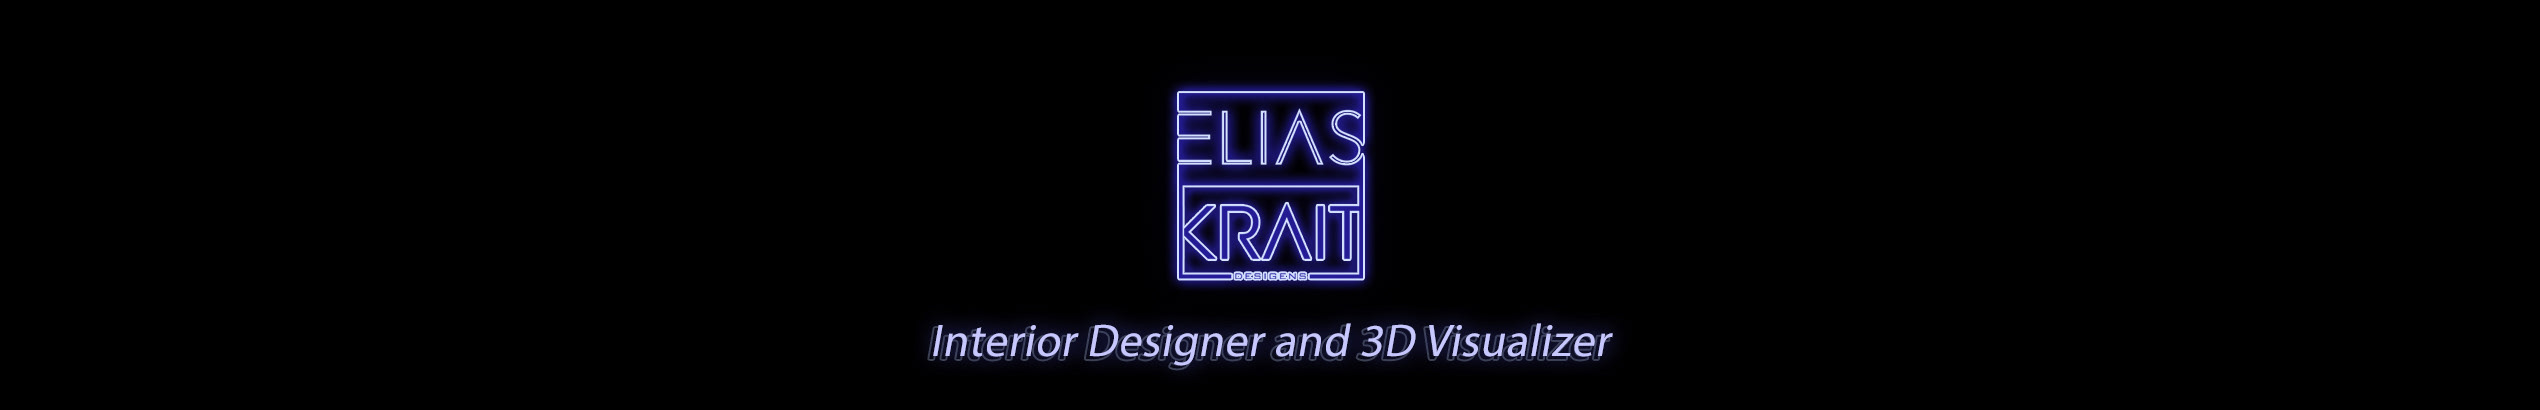 Elias Krait's profile banner